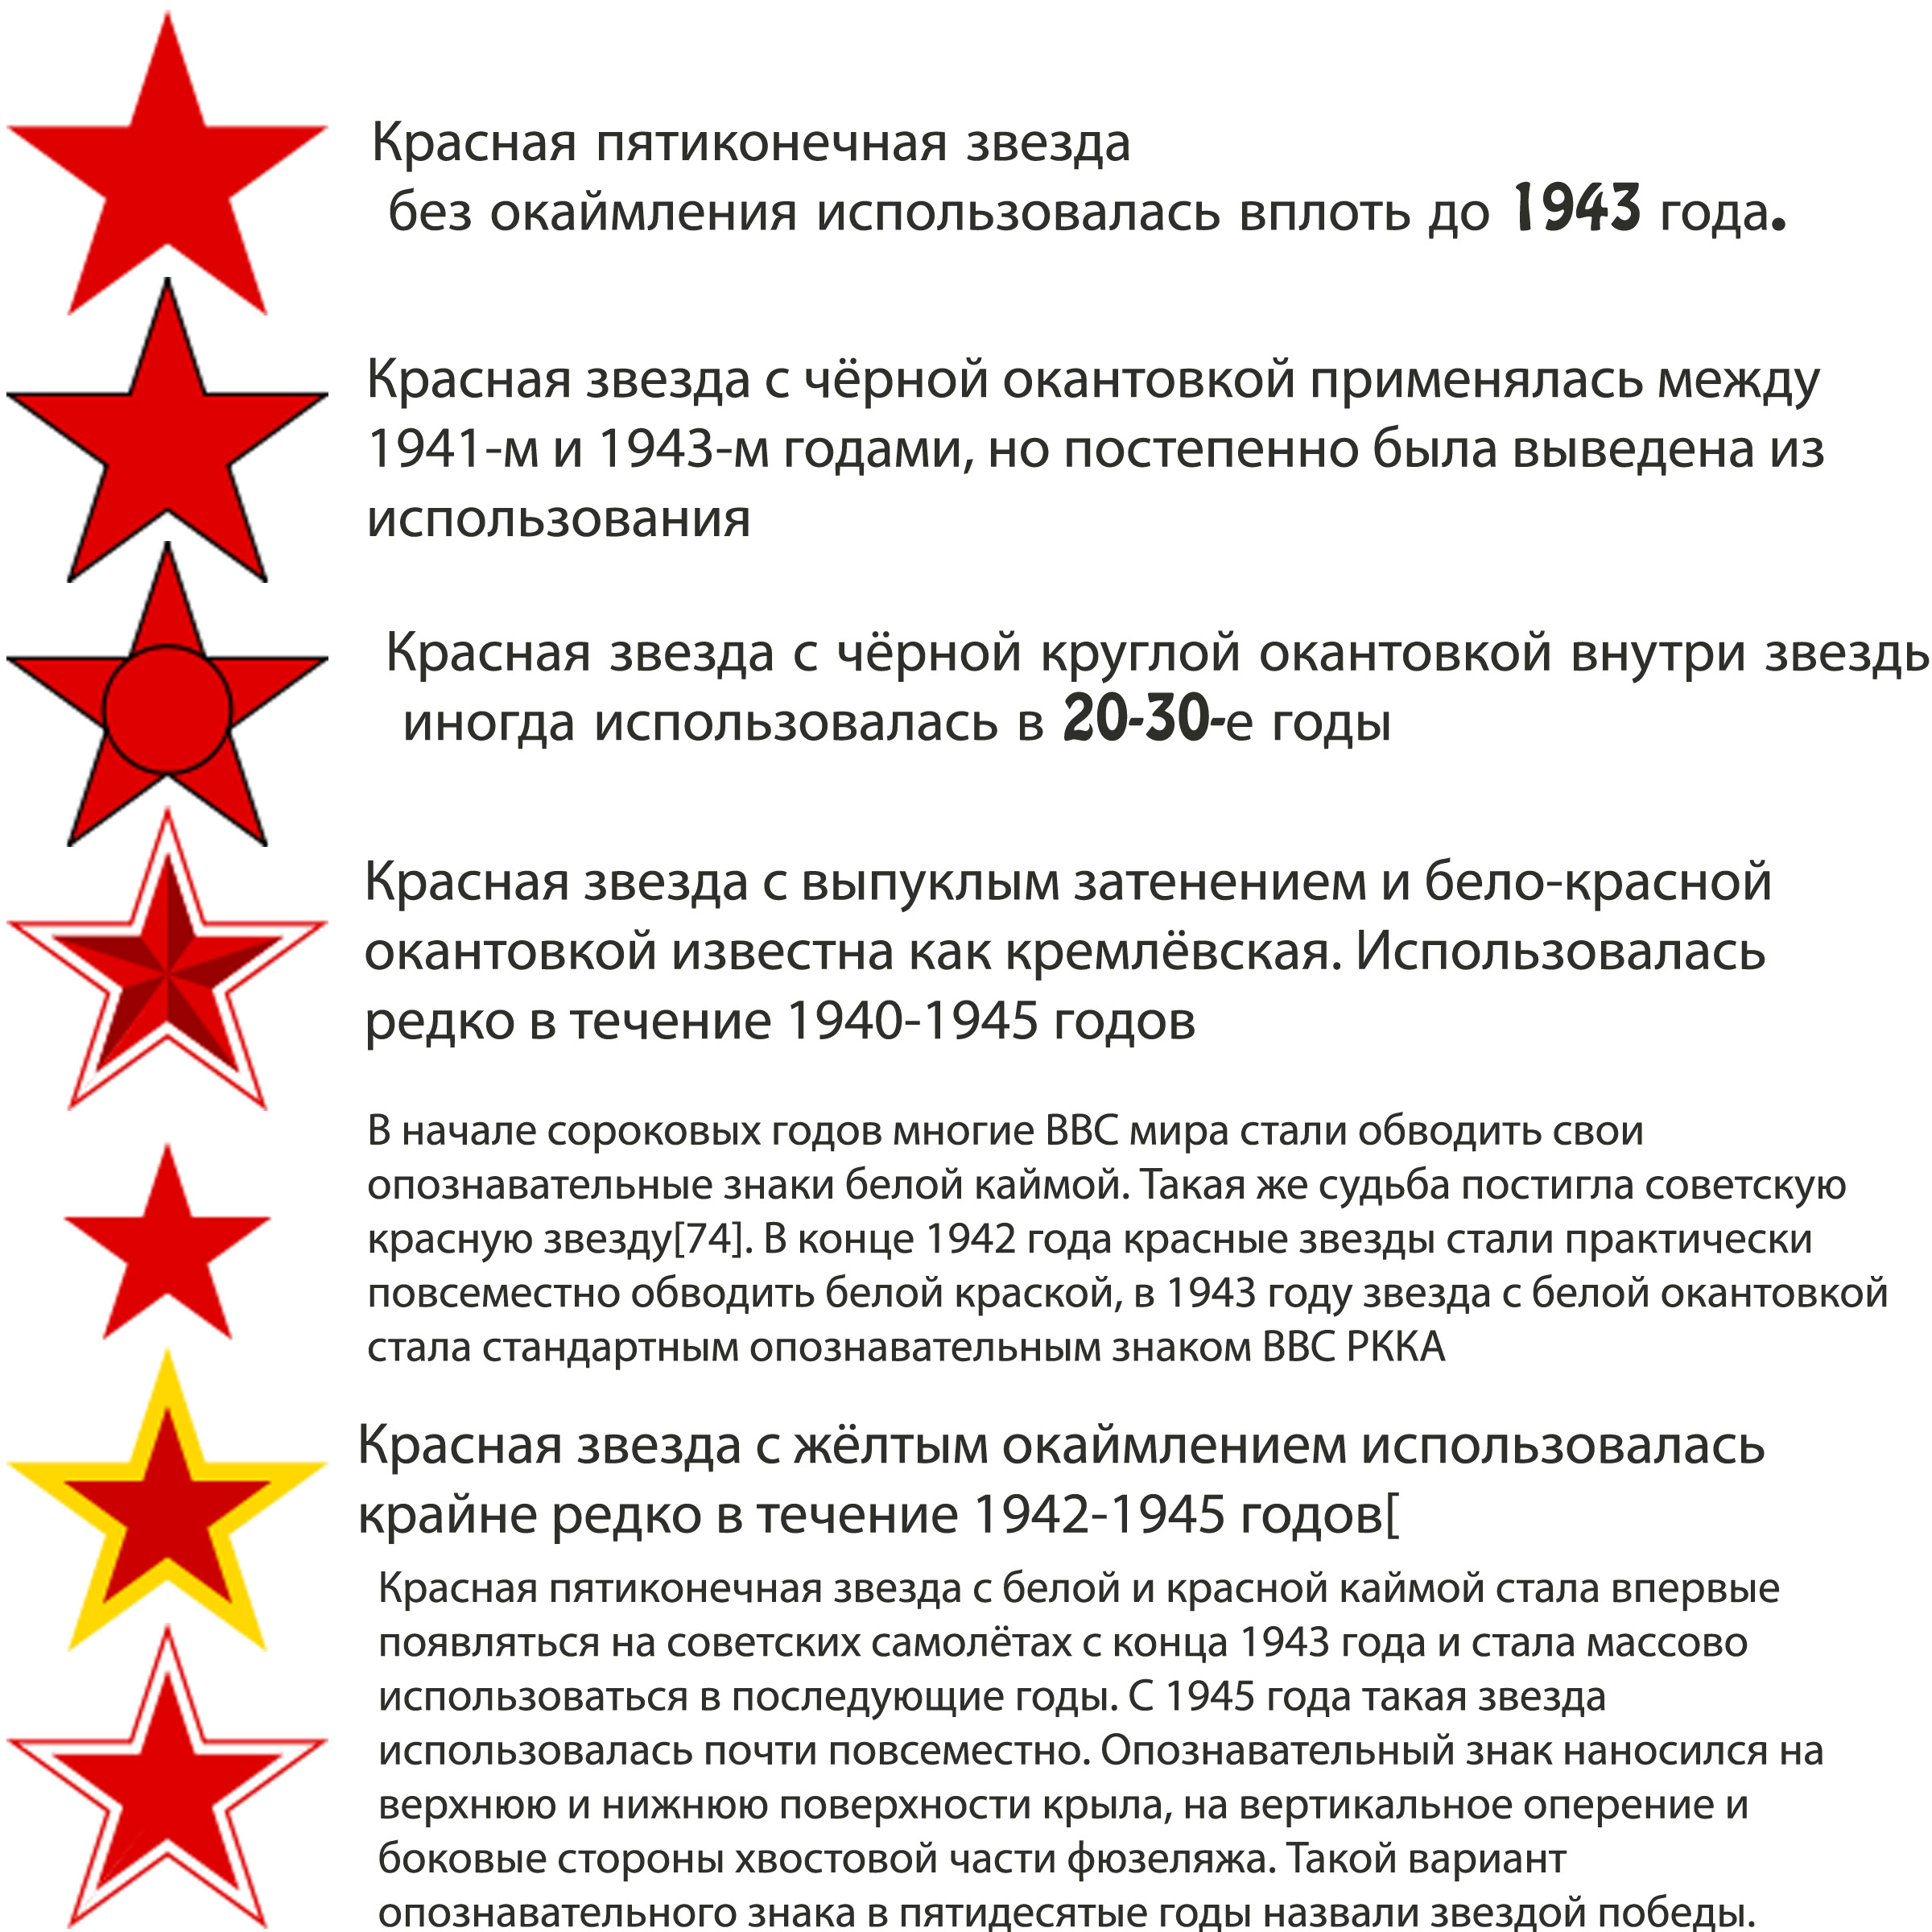 Красная звезда это какая. Опознавательные знаки ВВС СССР. Опознавательные знаки ВВС второй мировой. Звезда на военной технике. Красная звезда символ красной армии.